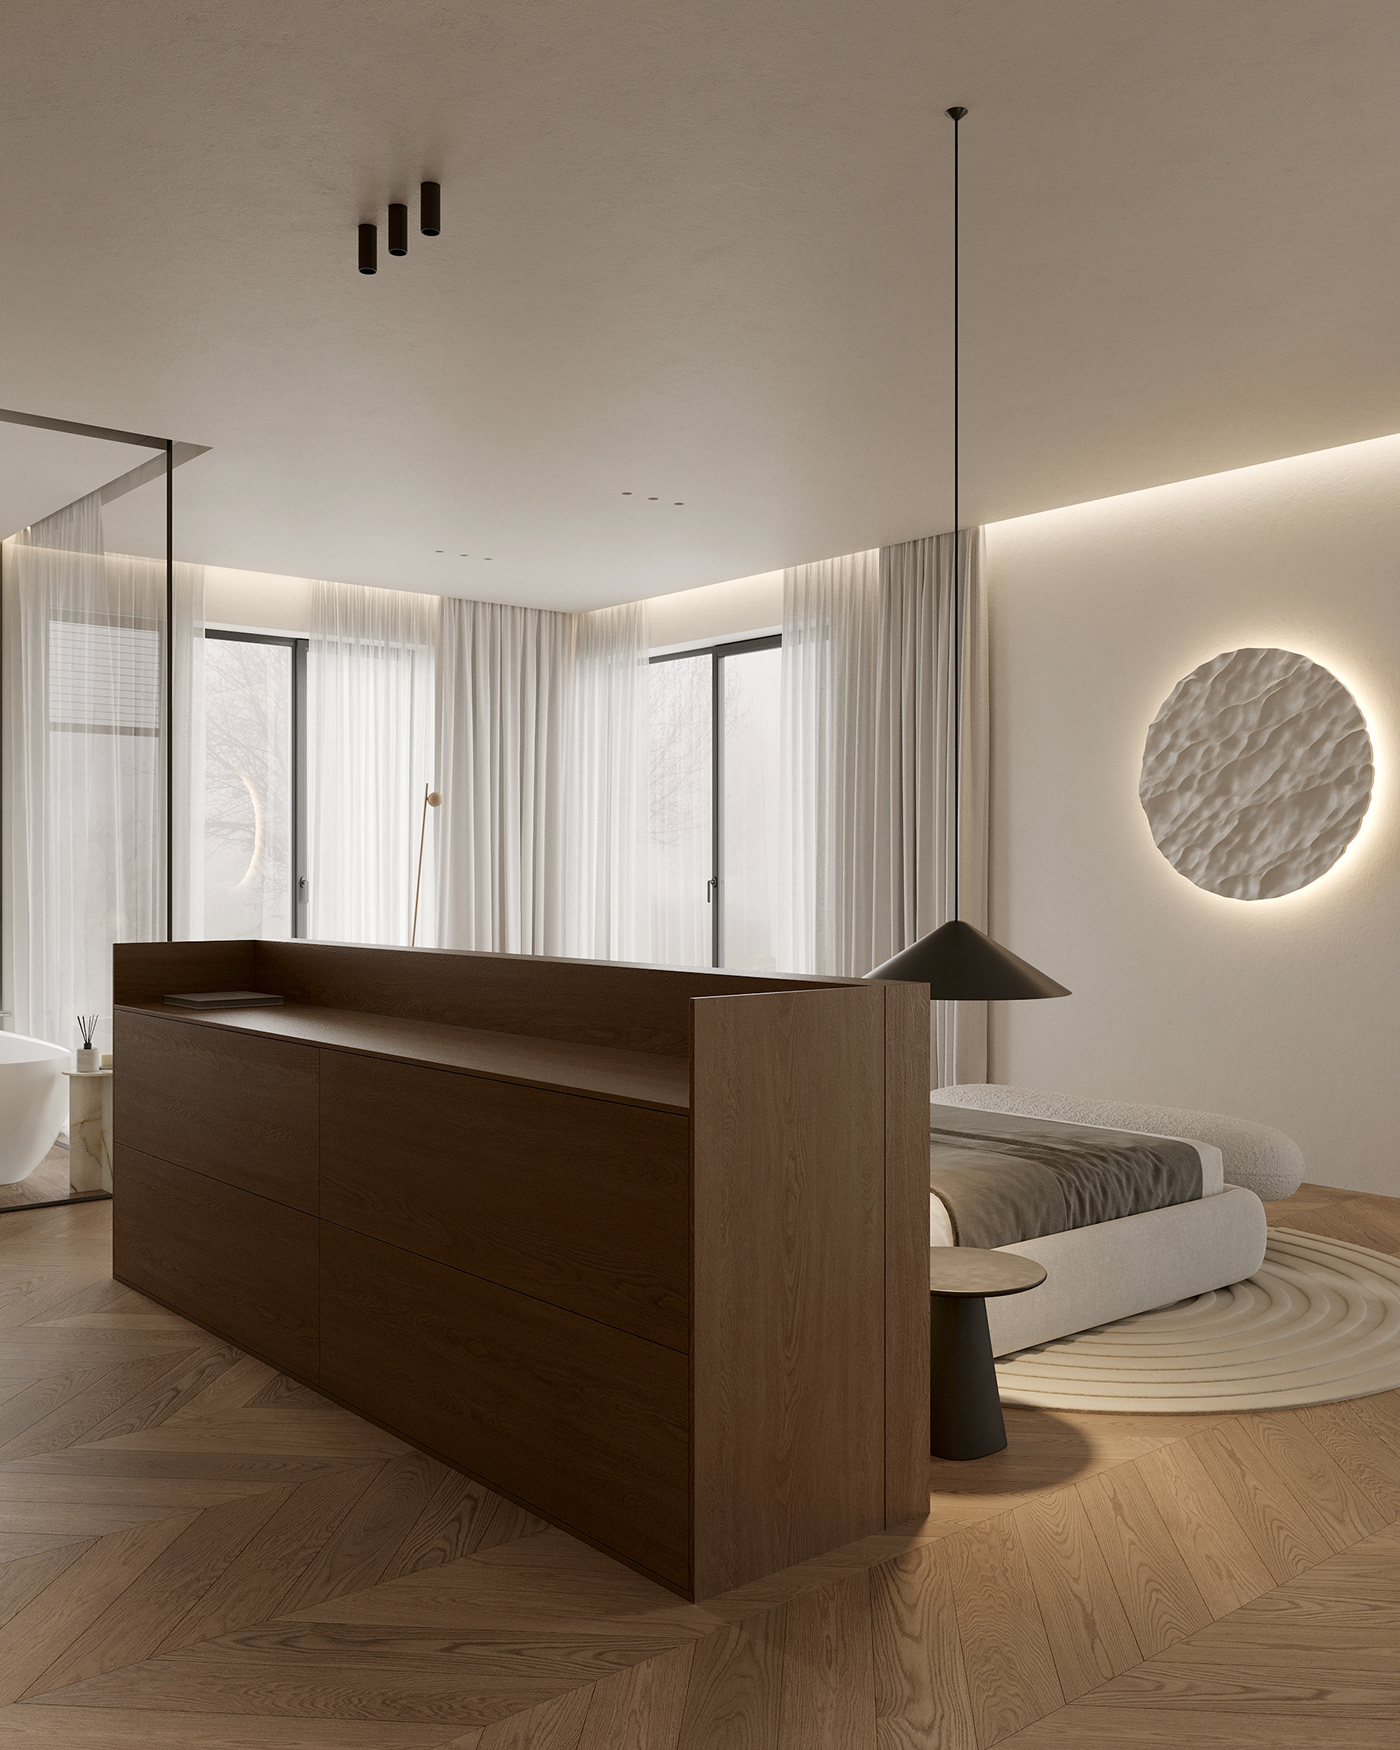 interior design  architecture visualization 3ds max archviz modern Render minimalist CGI softminimalism